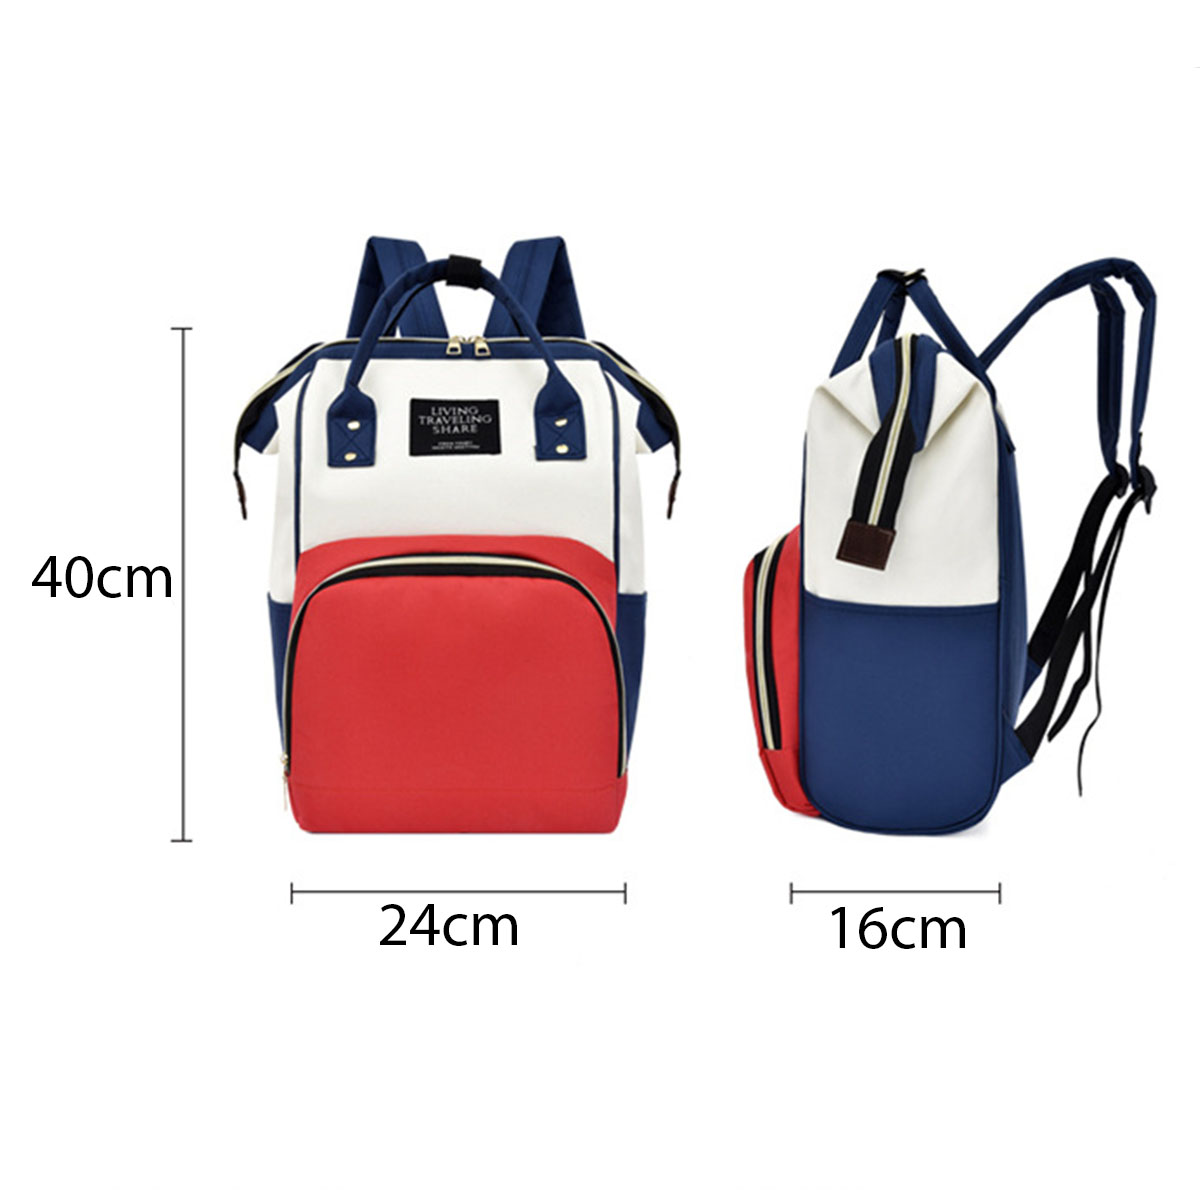 36L-Canvas-Mother-Baby-Bag-Multifunctional-Diaper-Bag-Shoulder-Bag-Backpack-Outdoor-Camping-Travel-1736483-2